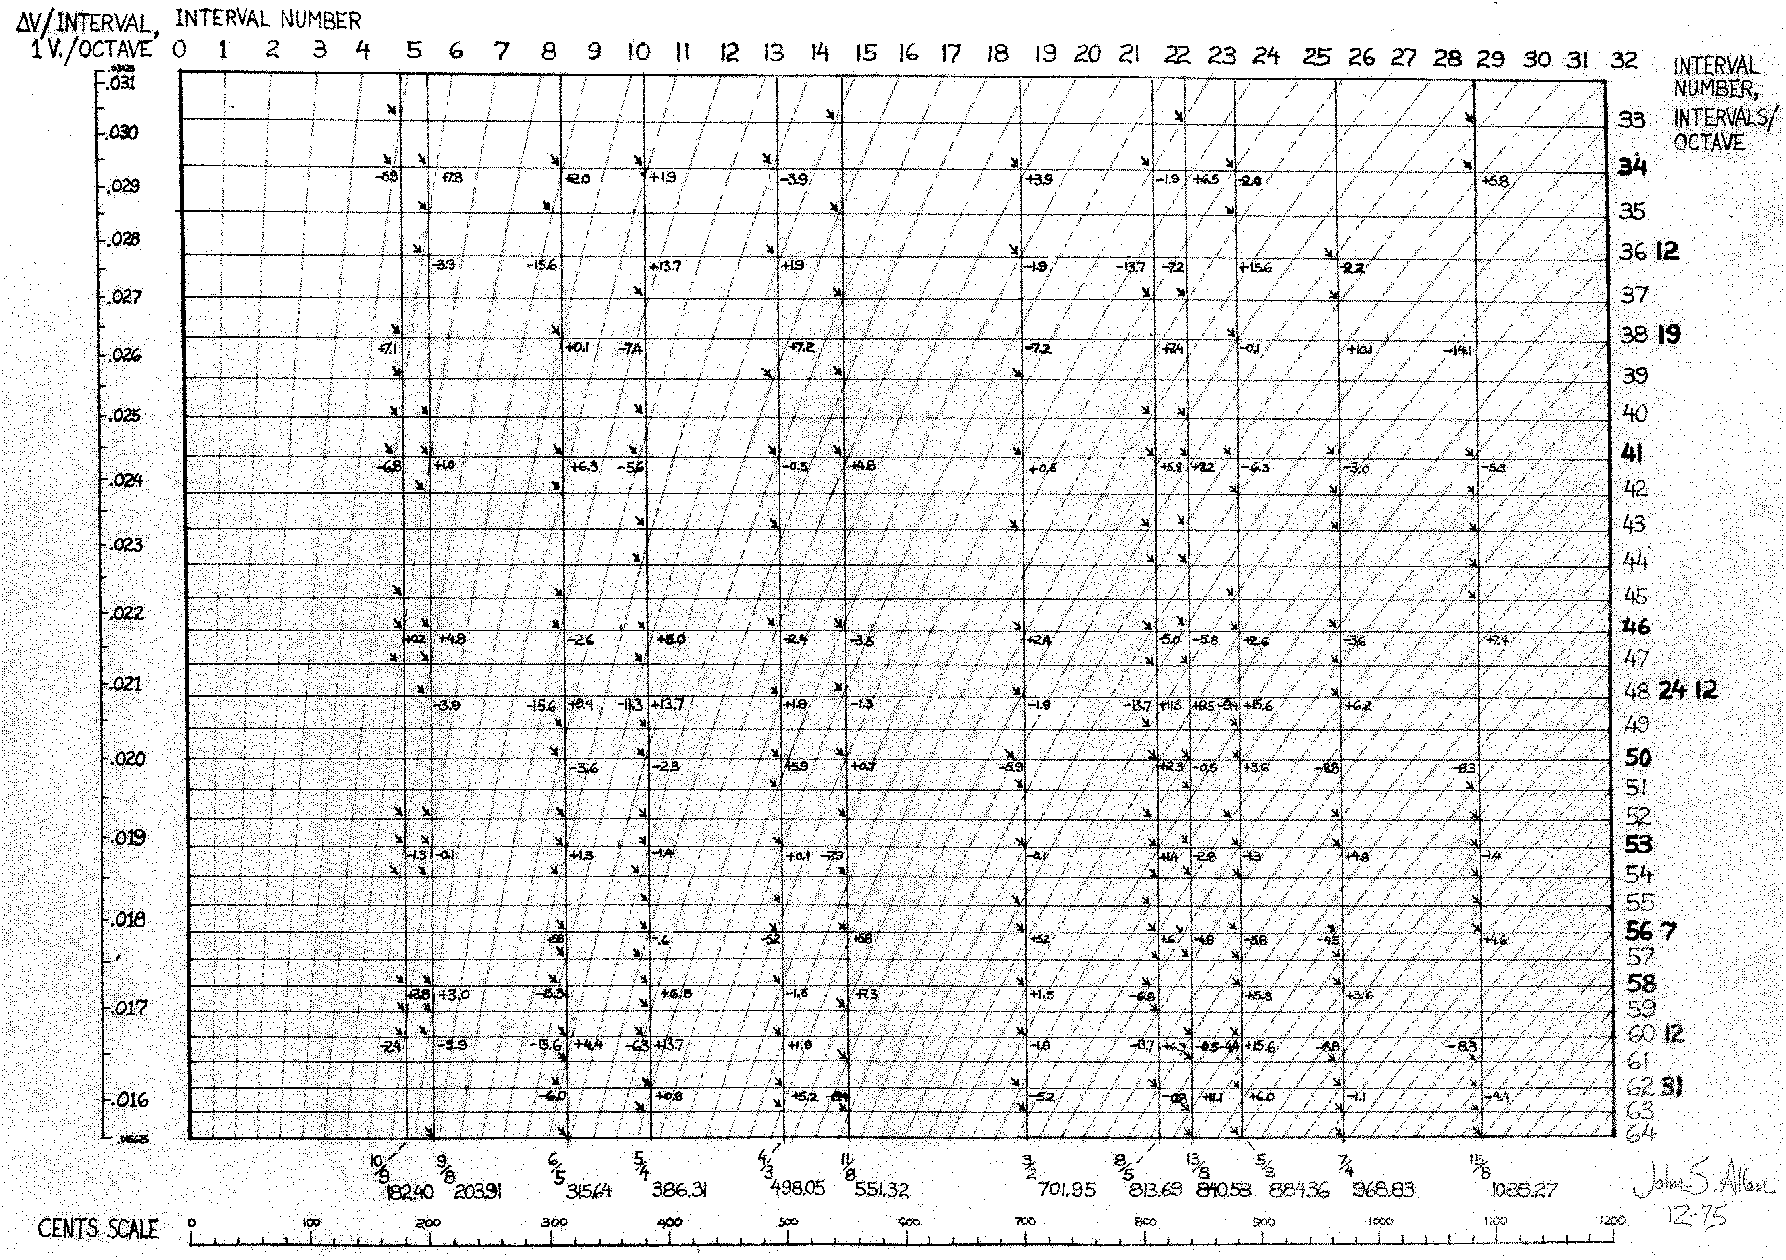 Large graph of integer and non-integer equal temperaments (121 KB GIF, 1786 x 1260 pixels)